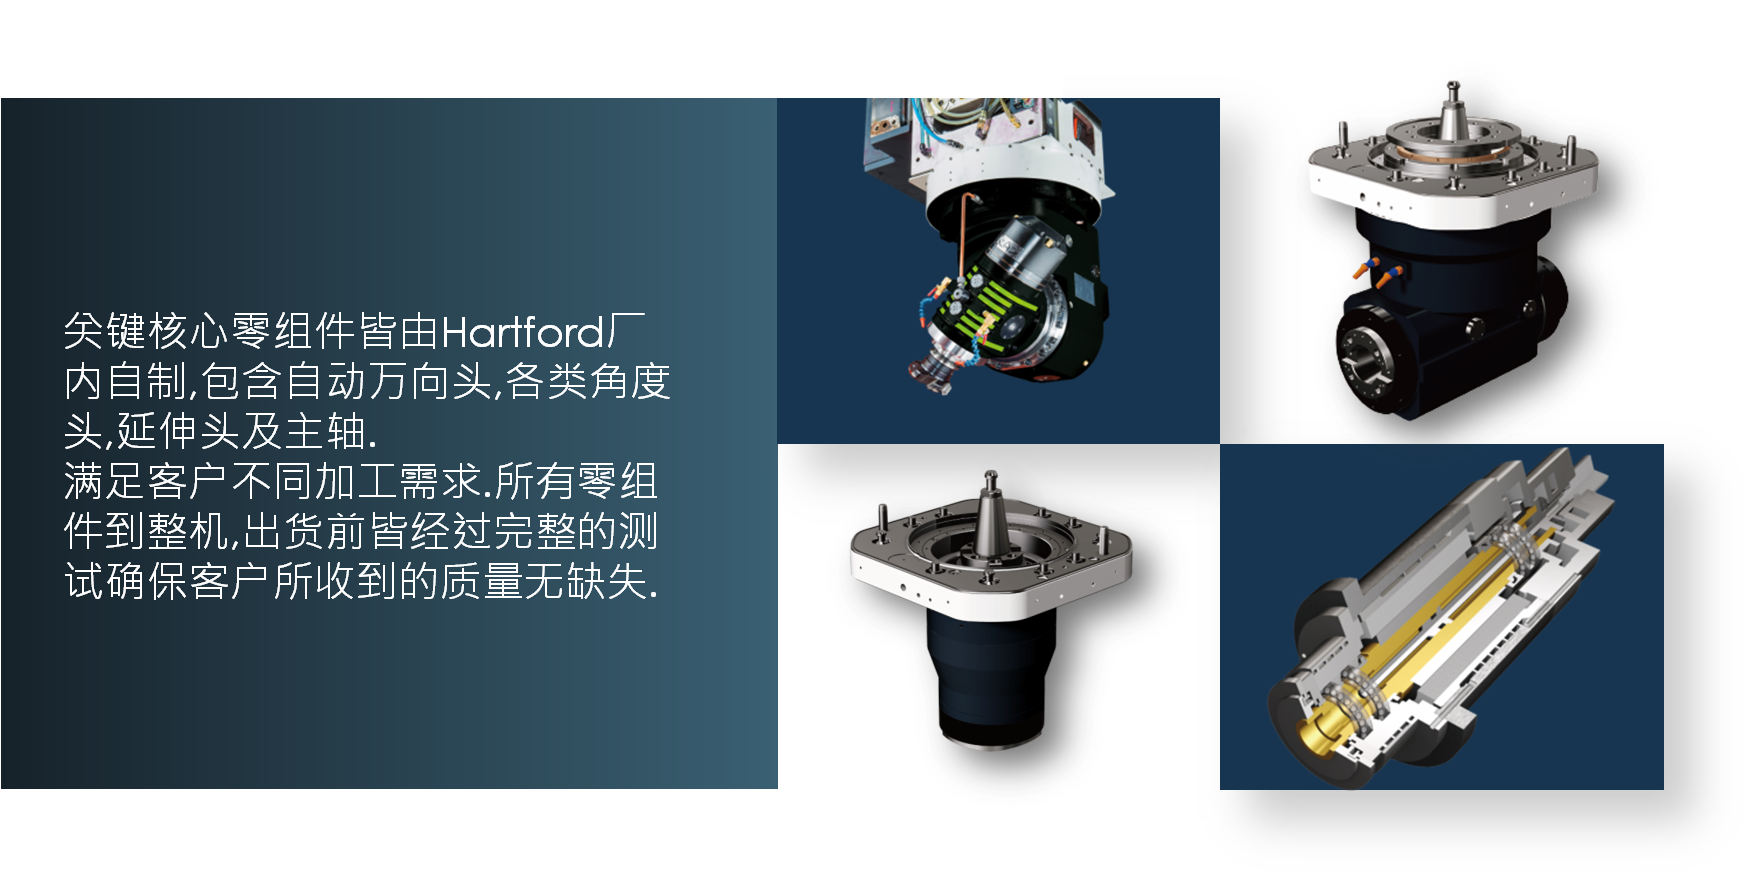 台湾EBET易博真人机床关键核心零组件皆由Hartford 厂内自制